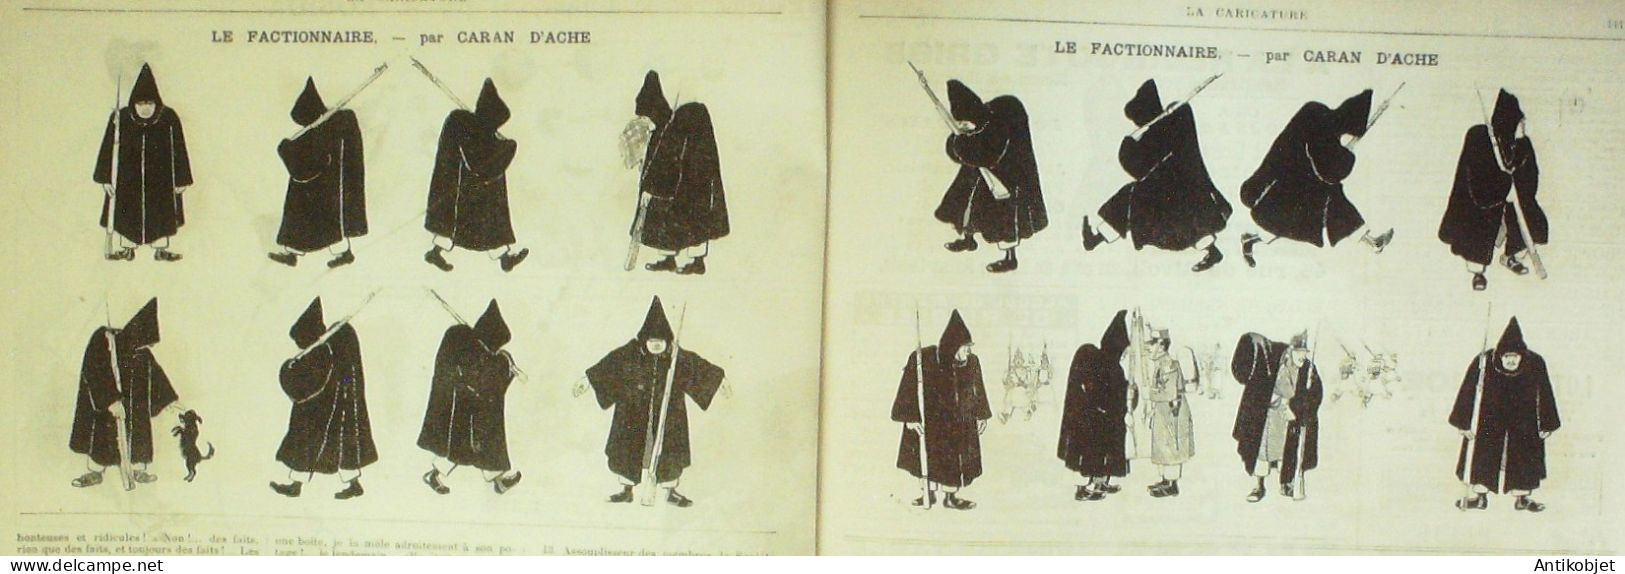 La Caricature 1885 N°275 La Gymnatique Cirque Escrime Robida Caran D'Ache Draner - Riviste - Ante 1900